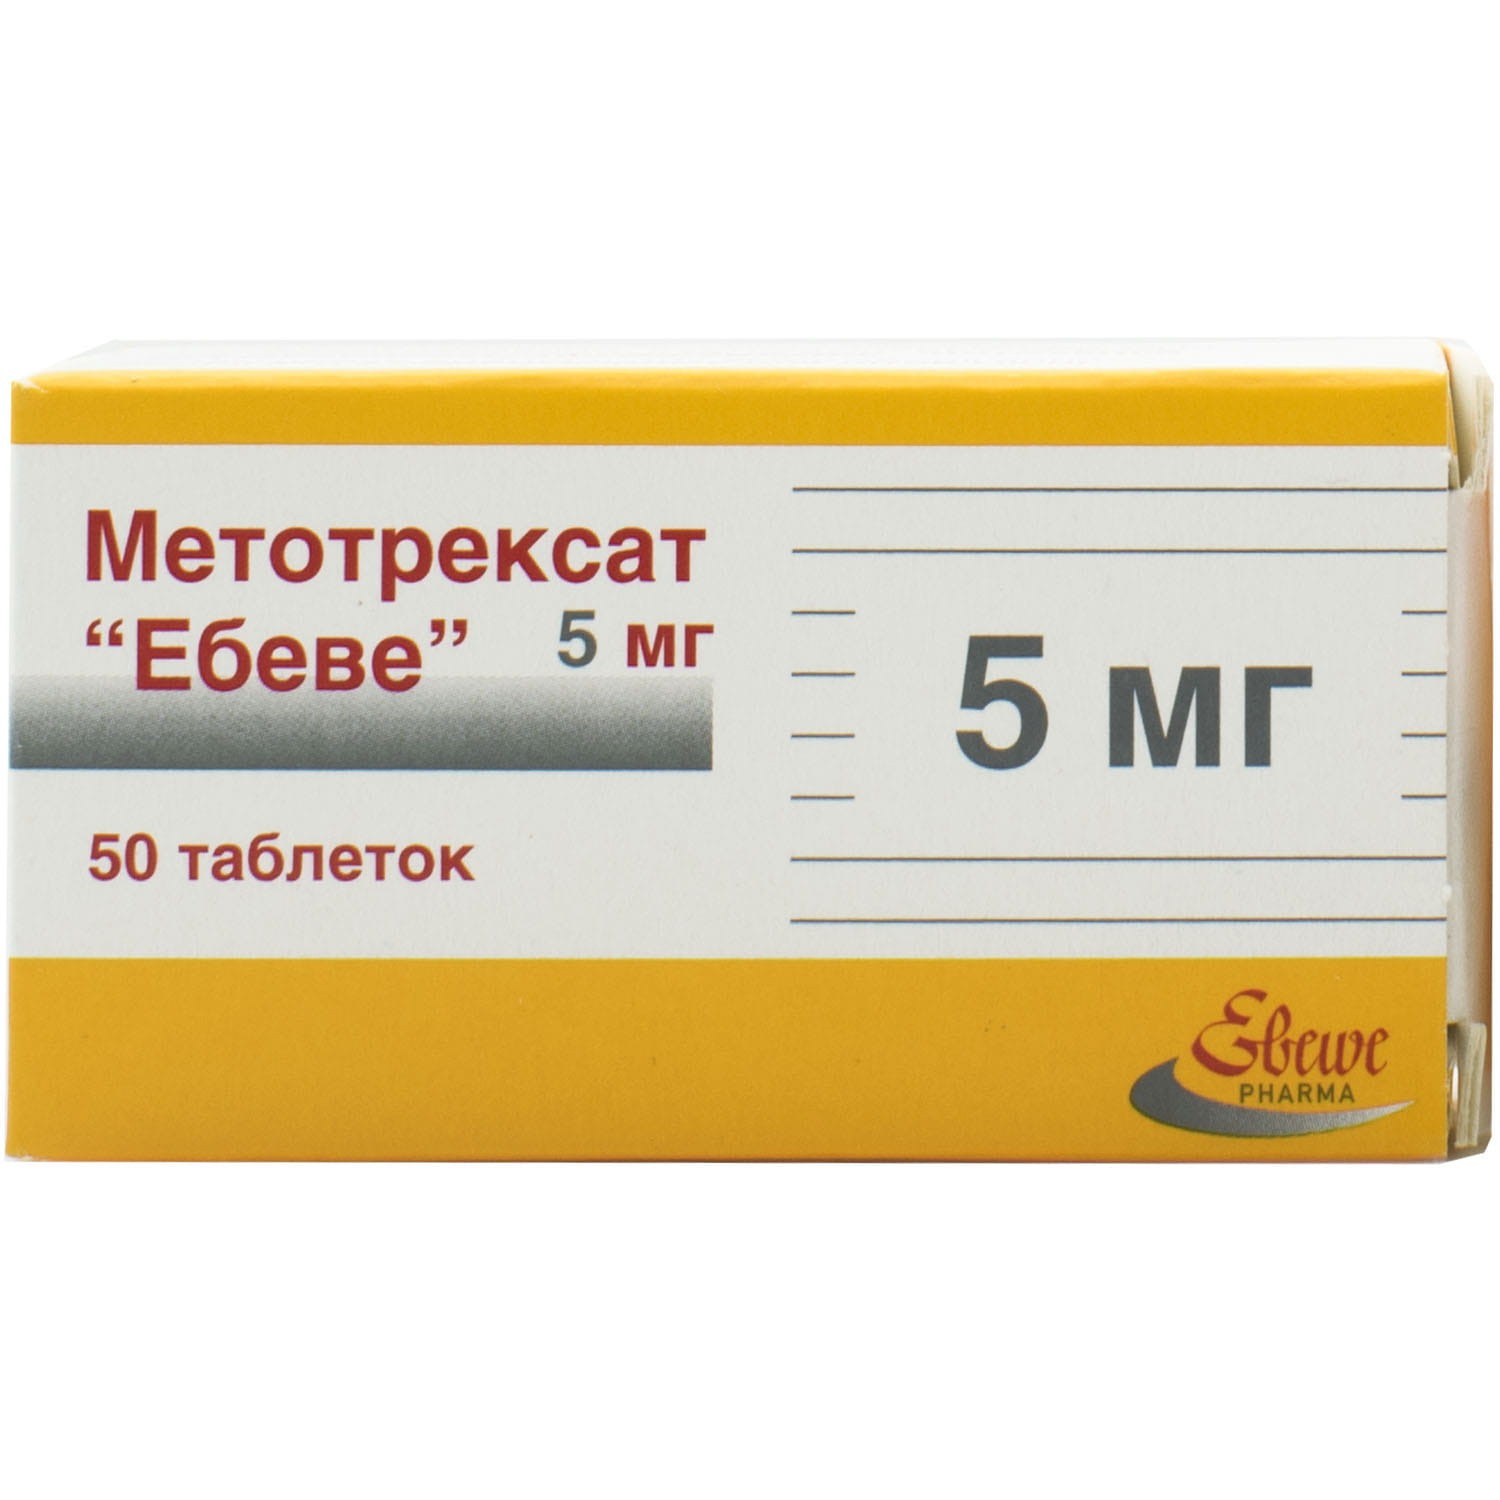 Метотрексат эбеве 10 мг мл. Метотрексат Эбеве 50 мг. Метотрексат 5 мг таблетки. Метотрексат Эбеве 5 мг таблетки. Метотрексат Эбеве 50 мг флакон.